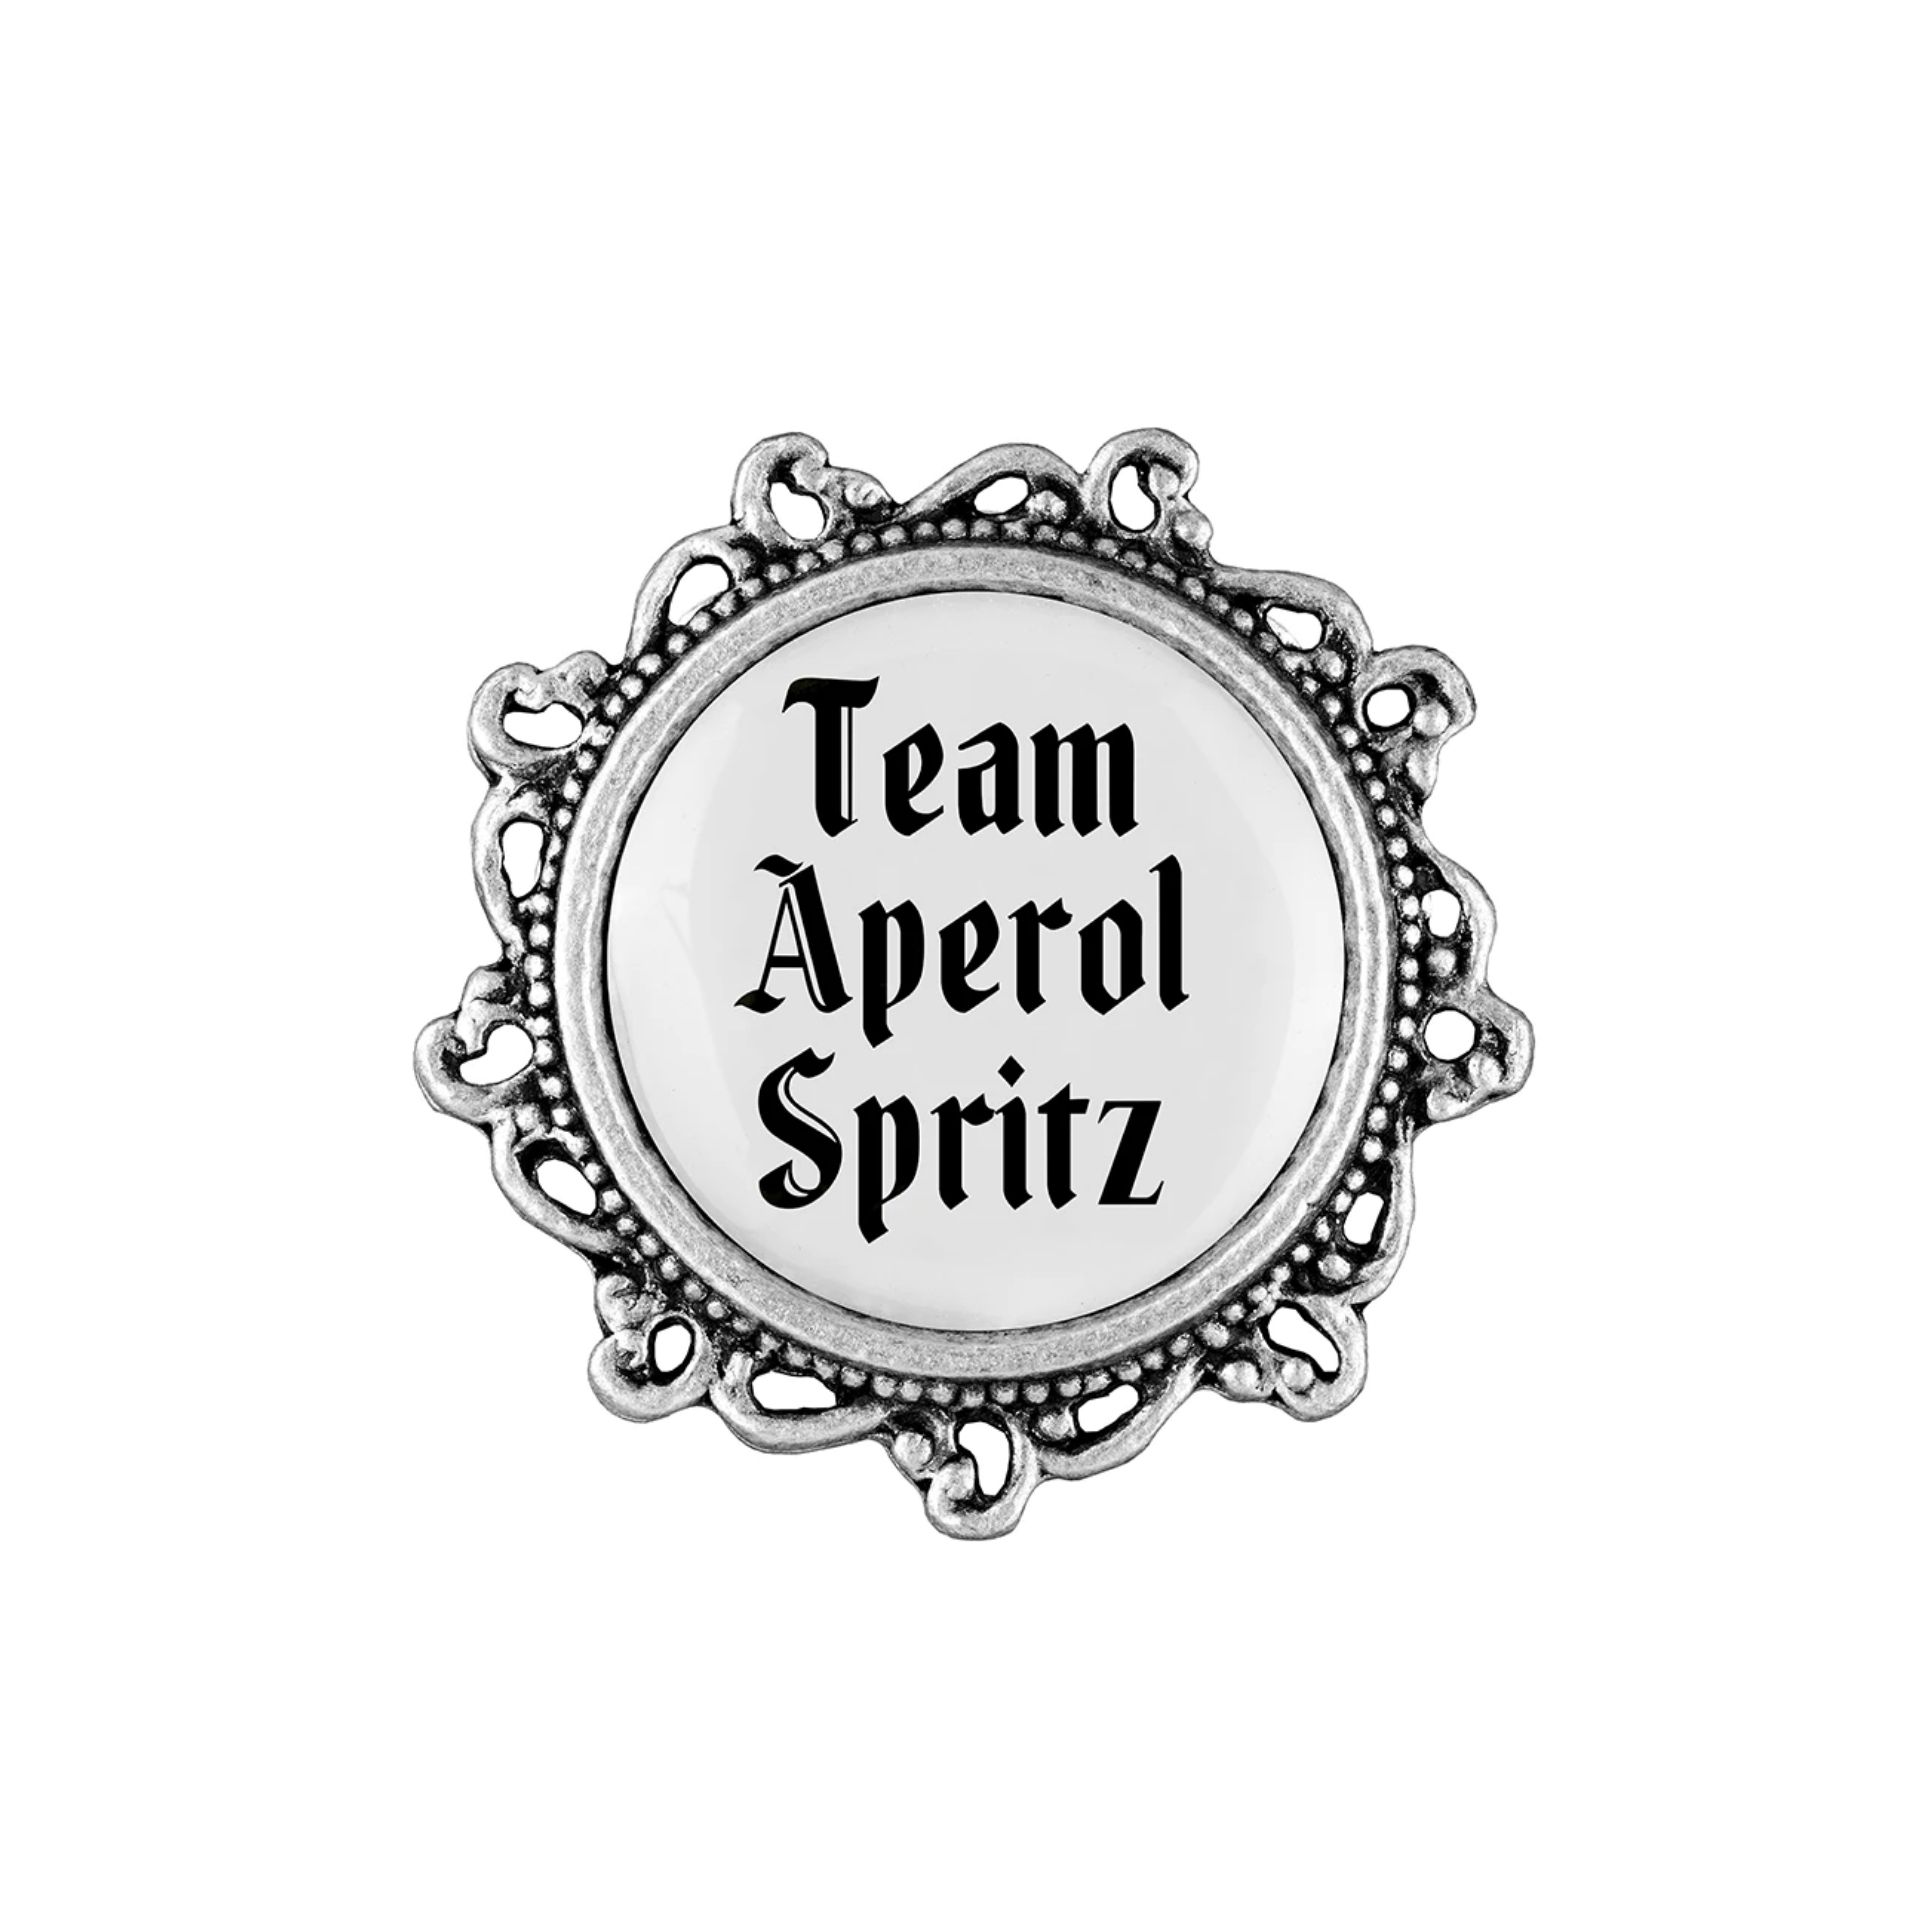 Gaudiknopf Team Aperol Spritz verziert